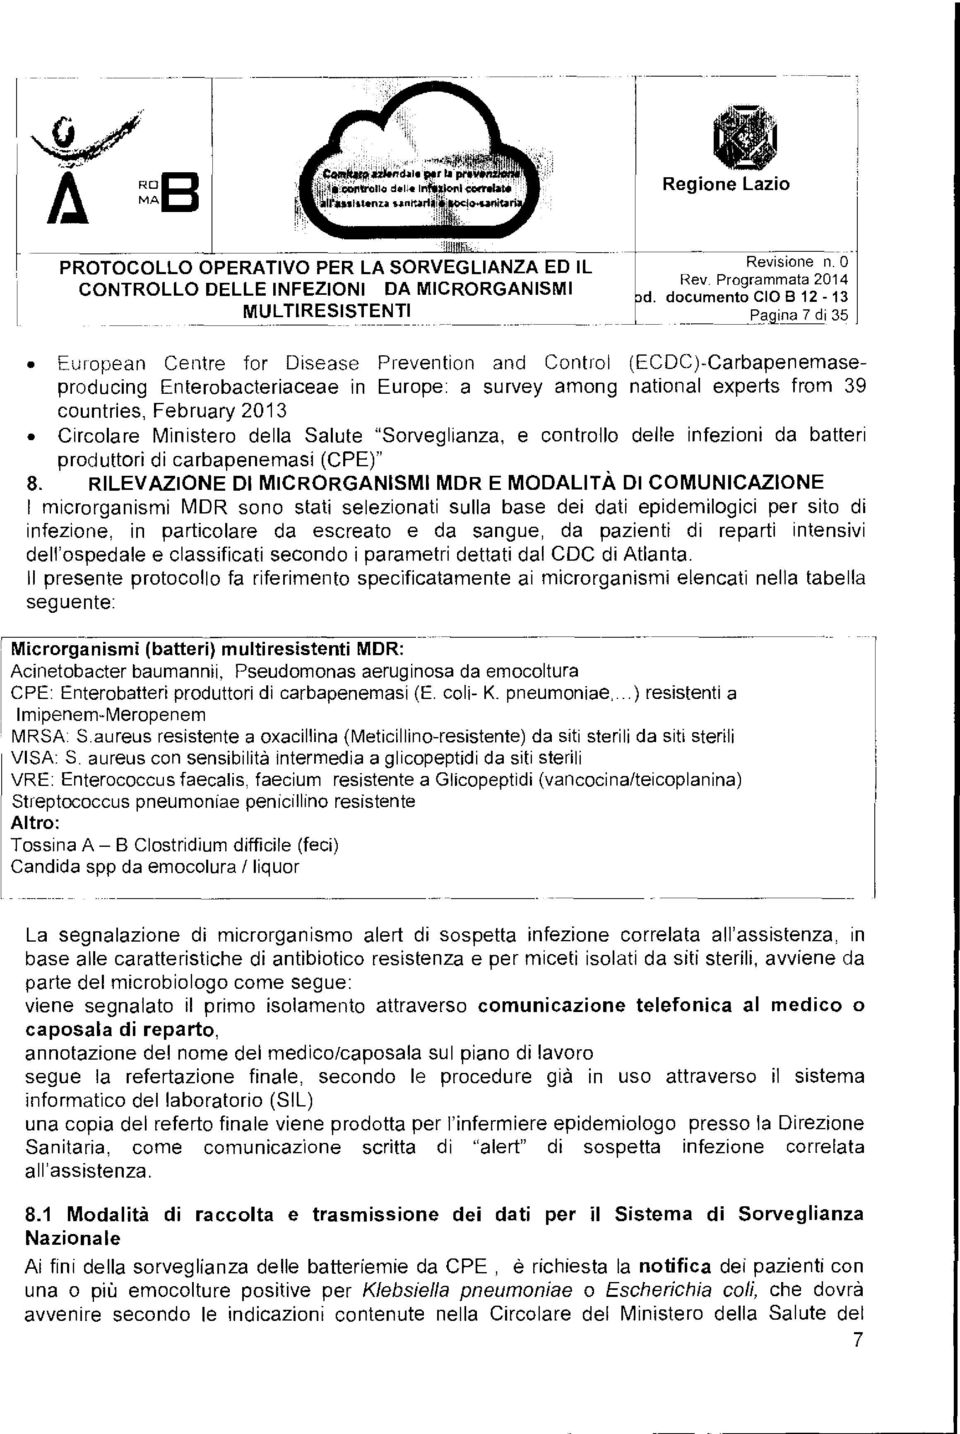 Circolare Ministero della Salute "Sorveglianza, e controllo delle infezioni da batteri produttori di carbapenemasi (CPE)" 8.